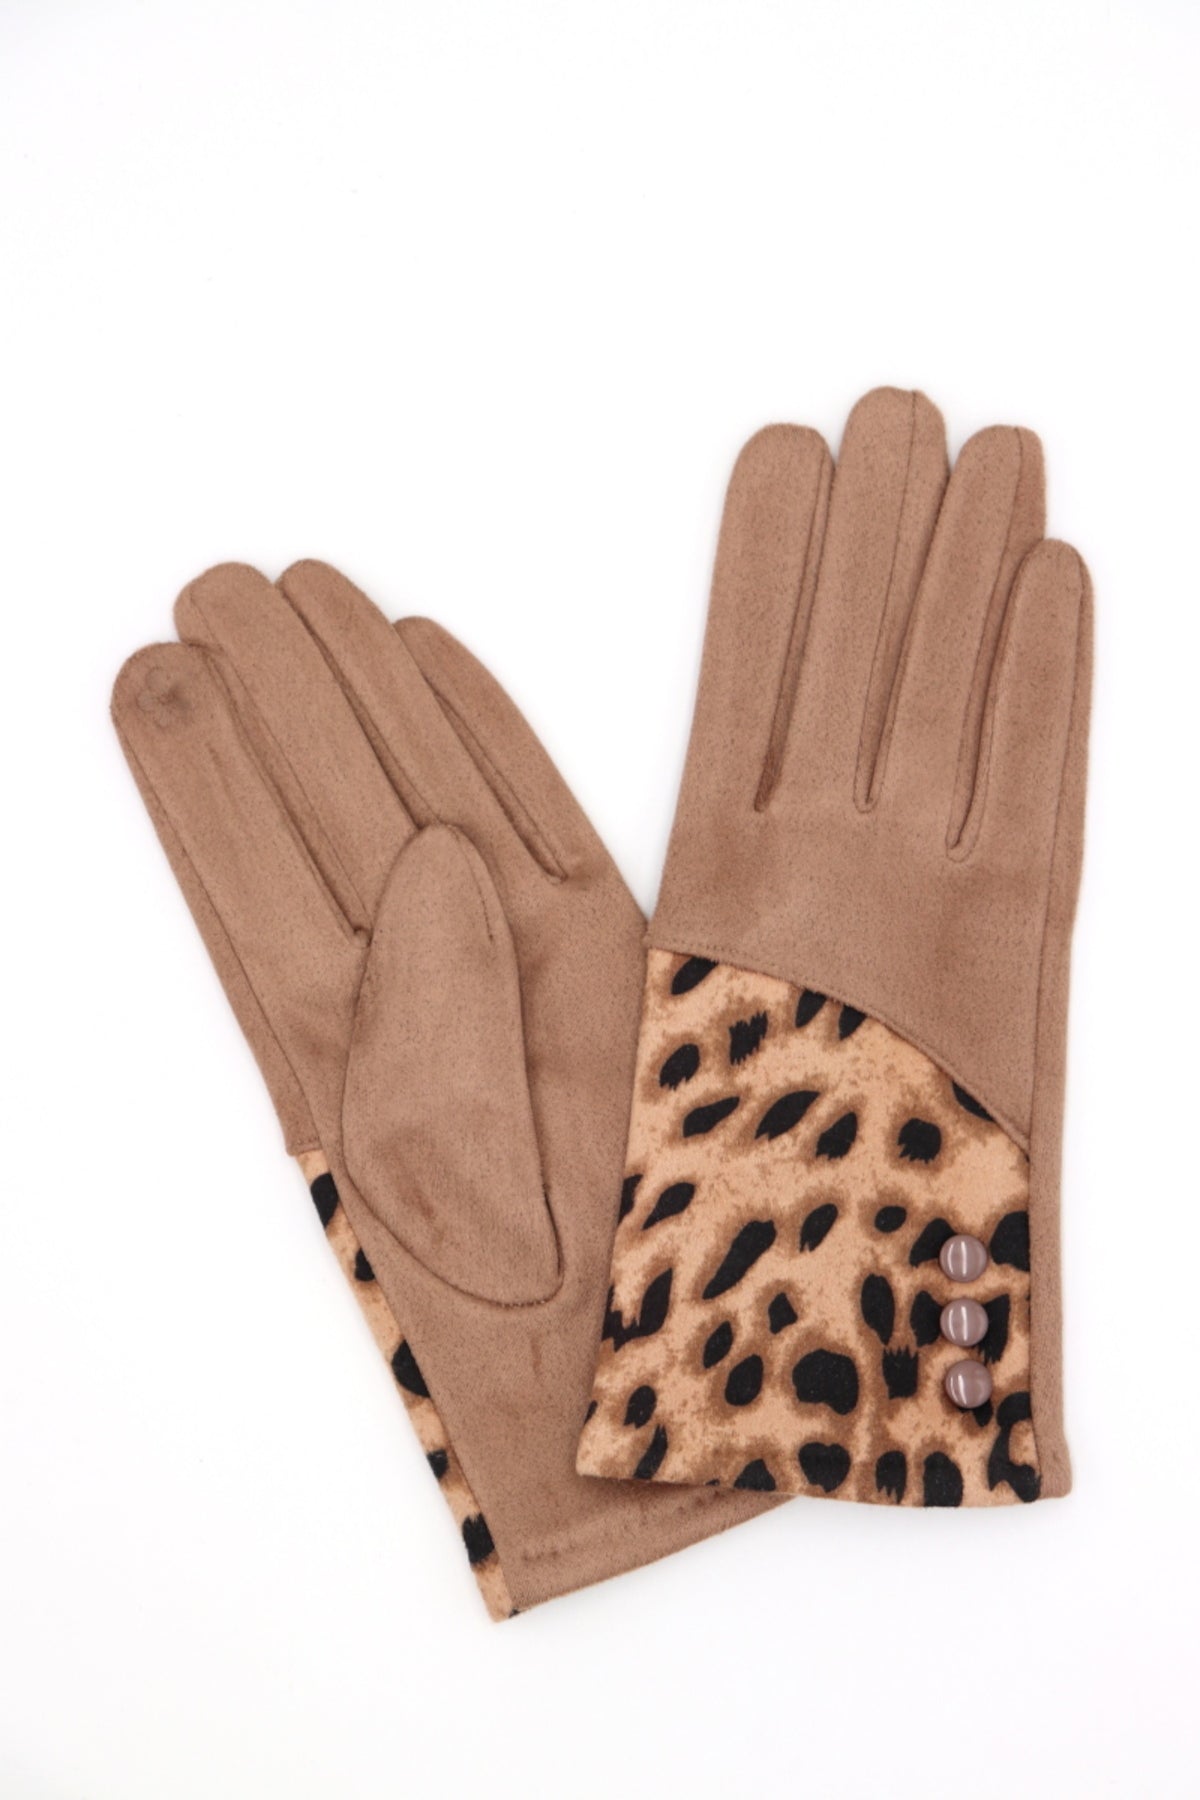 Hailee Animal Print Gloves Beige